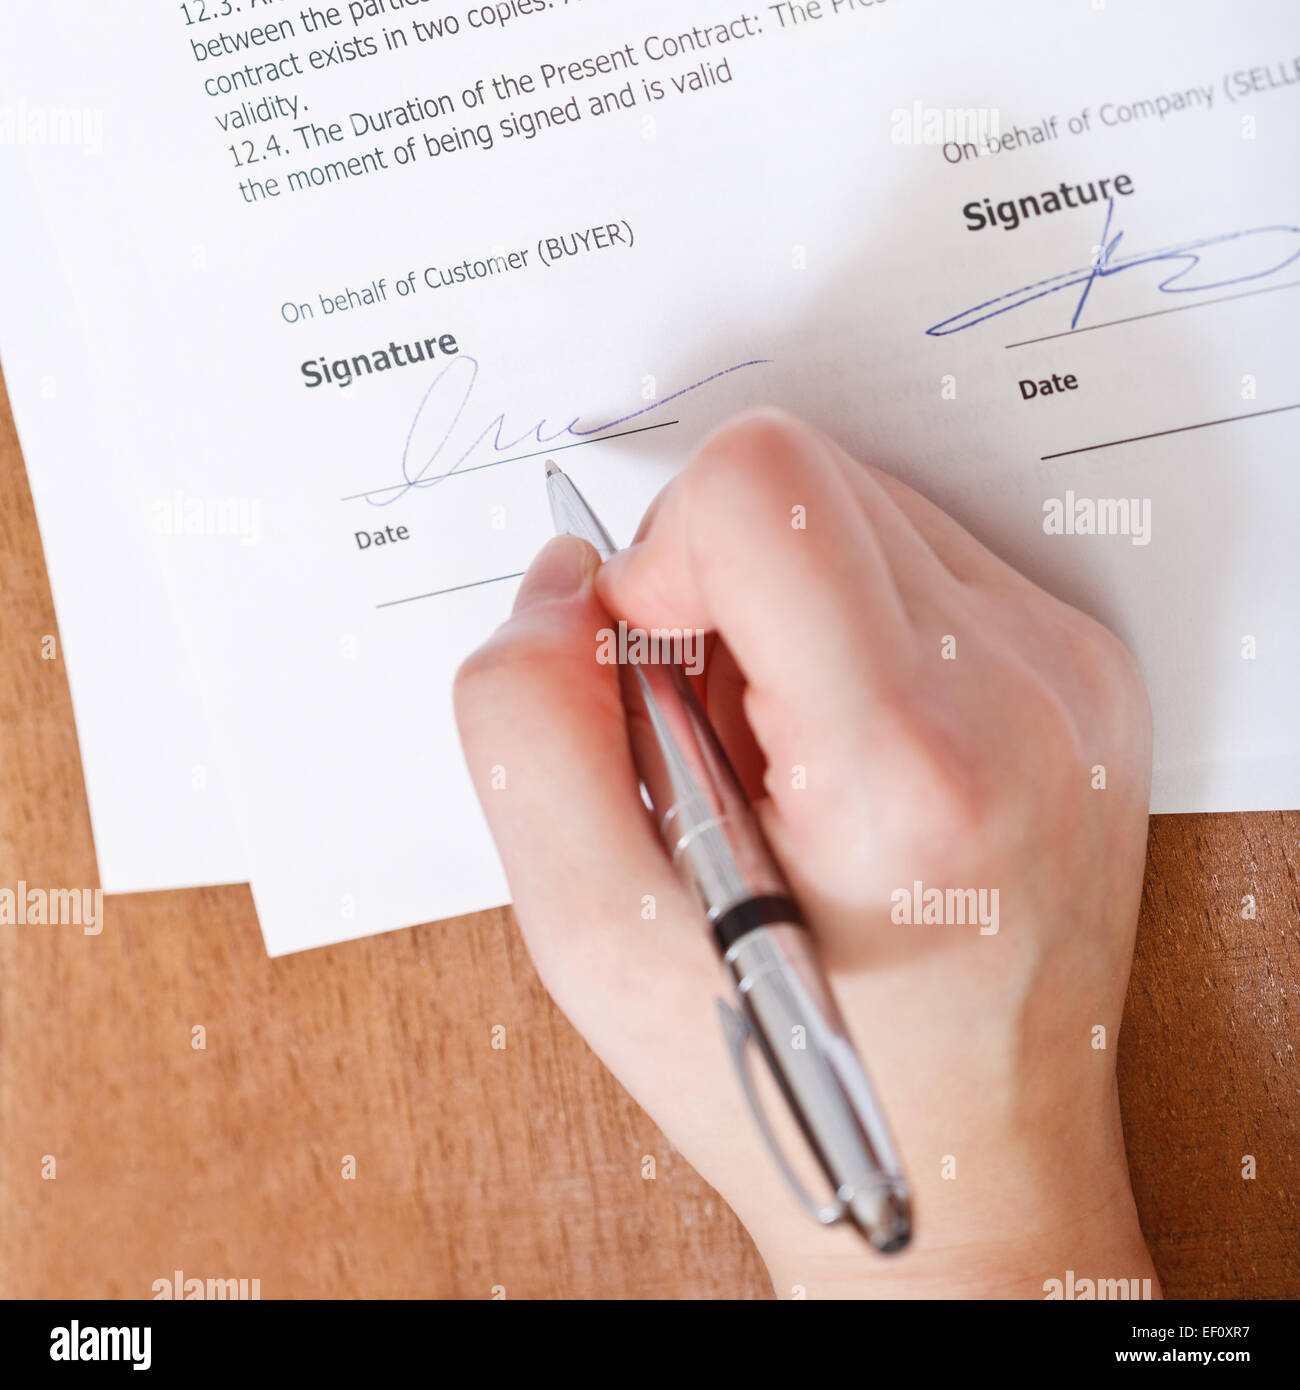 Клиент подписывается. Подпись договора. Договор с ручкой. Чел ставит подпись. Подпись заказчика.